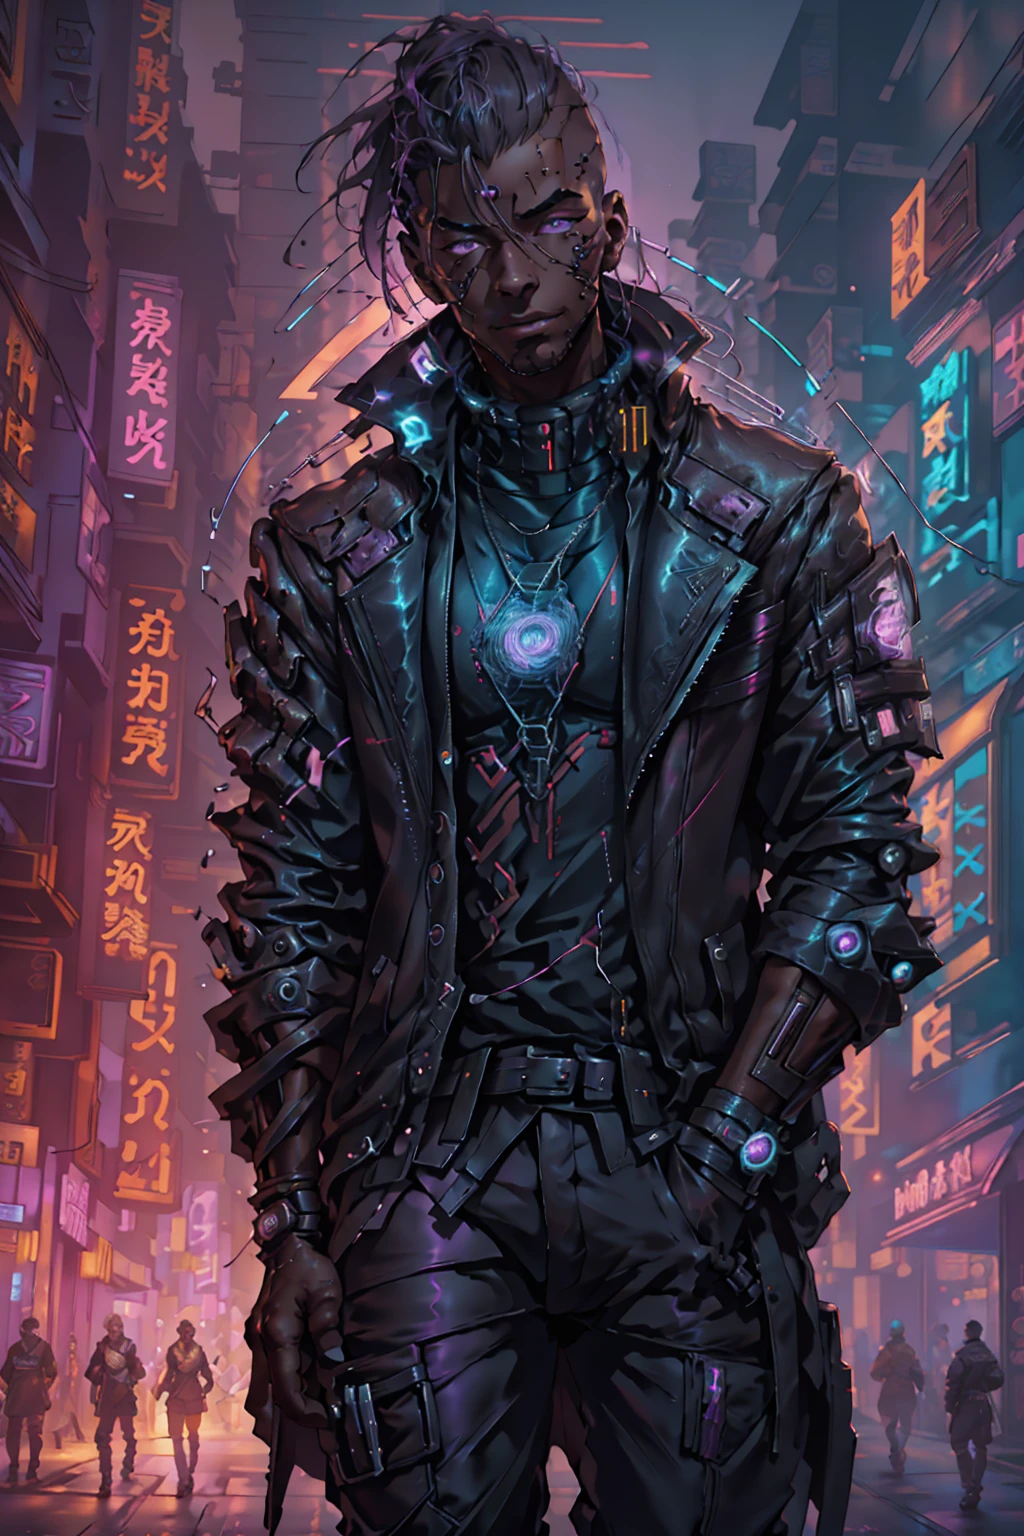 (meilleure qualité, chef-d&#39;œuvre, plein de détails), 1fille, illustration officielle de l&#39;art anime, Mâle afro-américain aux yeux violets, Homme à la peau foncée dans une veste en cuir de couleur marron marchant dans une rue, hyper-realistic Style cyberpunk, portrait d&#39;un homme cyberpunk, art cyberpunk ultraréaliste 8k, Style cyberpunk ， hyperréaliste, personnage cyberpunk, tendance sur artstation, personnage cinématographique complet, tendance sur artstation 4k, portrait d&#39;un cyborg cyberpunk, portrait cinématographique réaliste, héros cyberpunk parfaitement photoréaliste, incroyablement détaillé, 8k, UHD, chef-d&#39;œuvre, meilleure qualité, ultra détaillé, complexe,